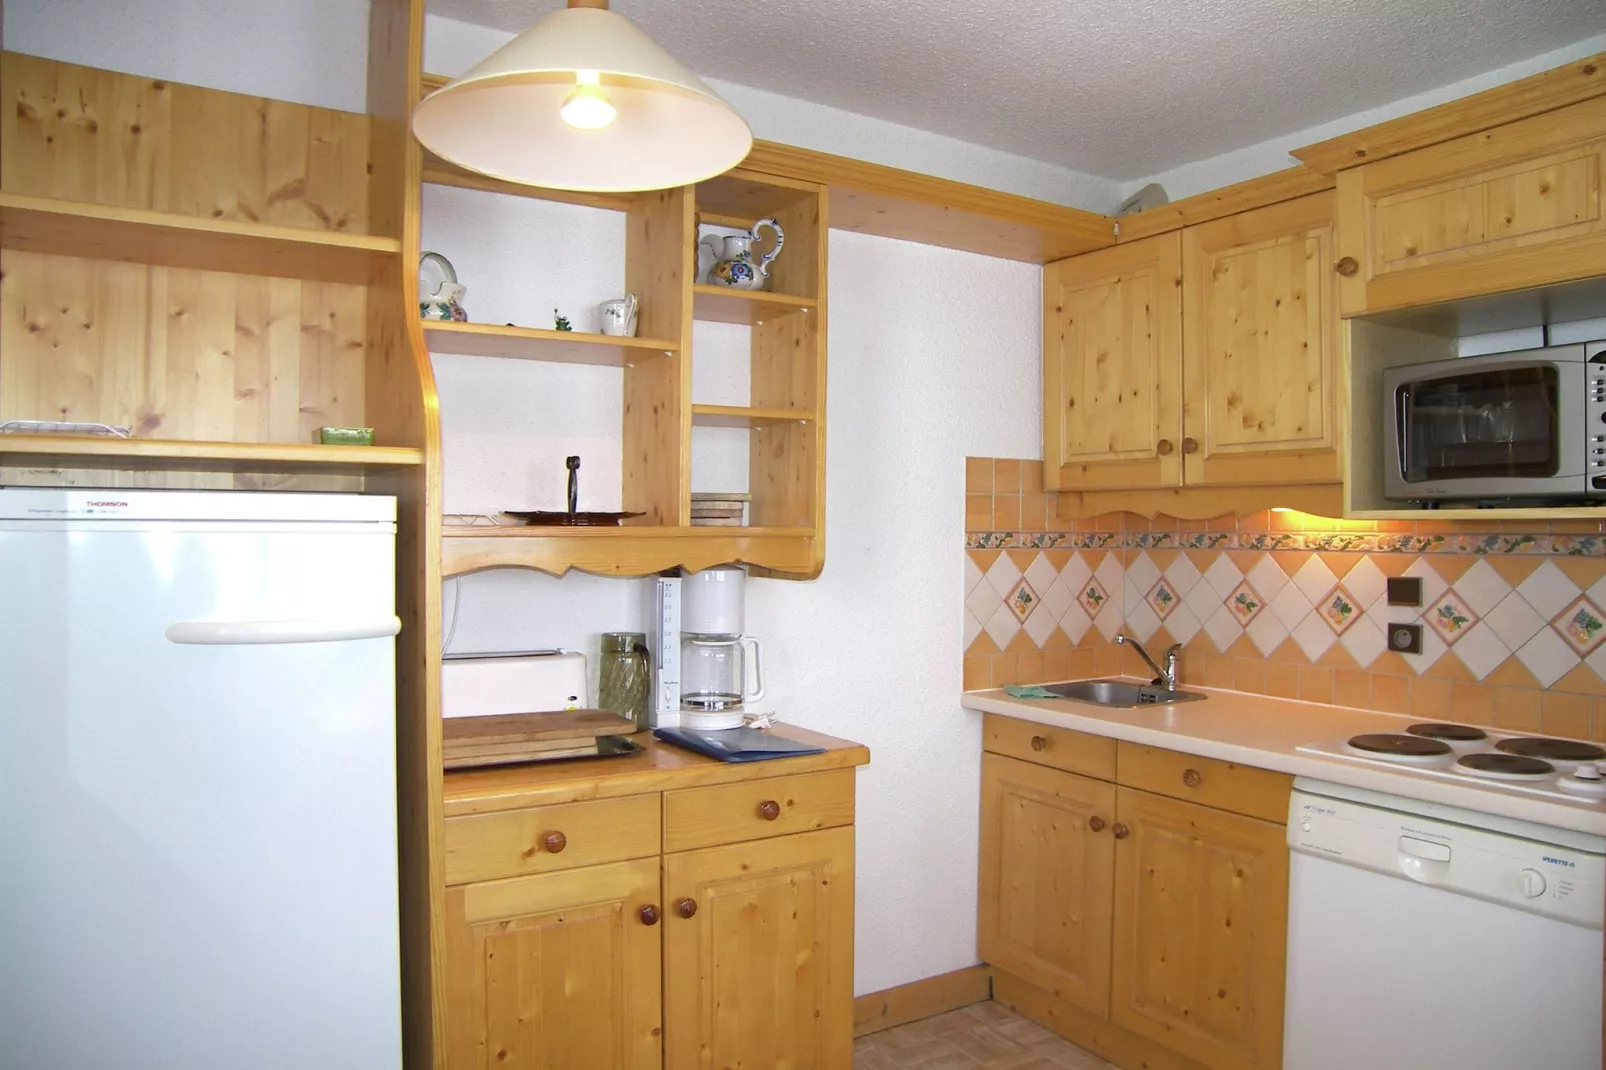 Residence asphodeles-Keuken